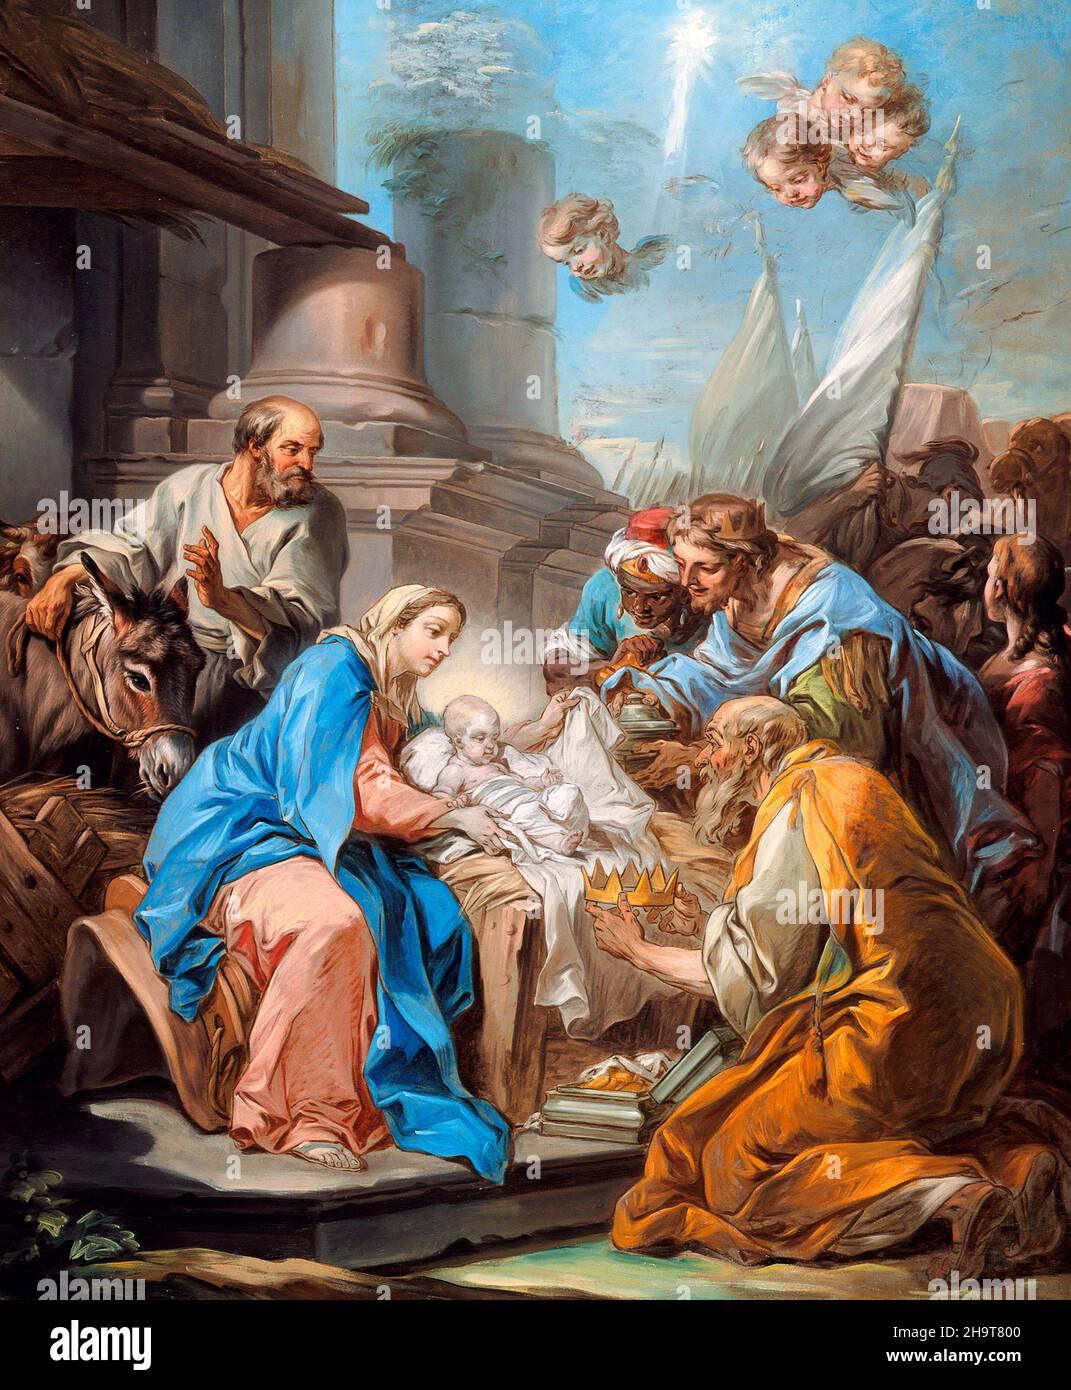 L'adoration des Mages par le peintre français Charles-André Van Loo (1705-1765), huile sur toile, c.1760 Banque D'Images